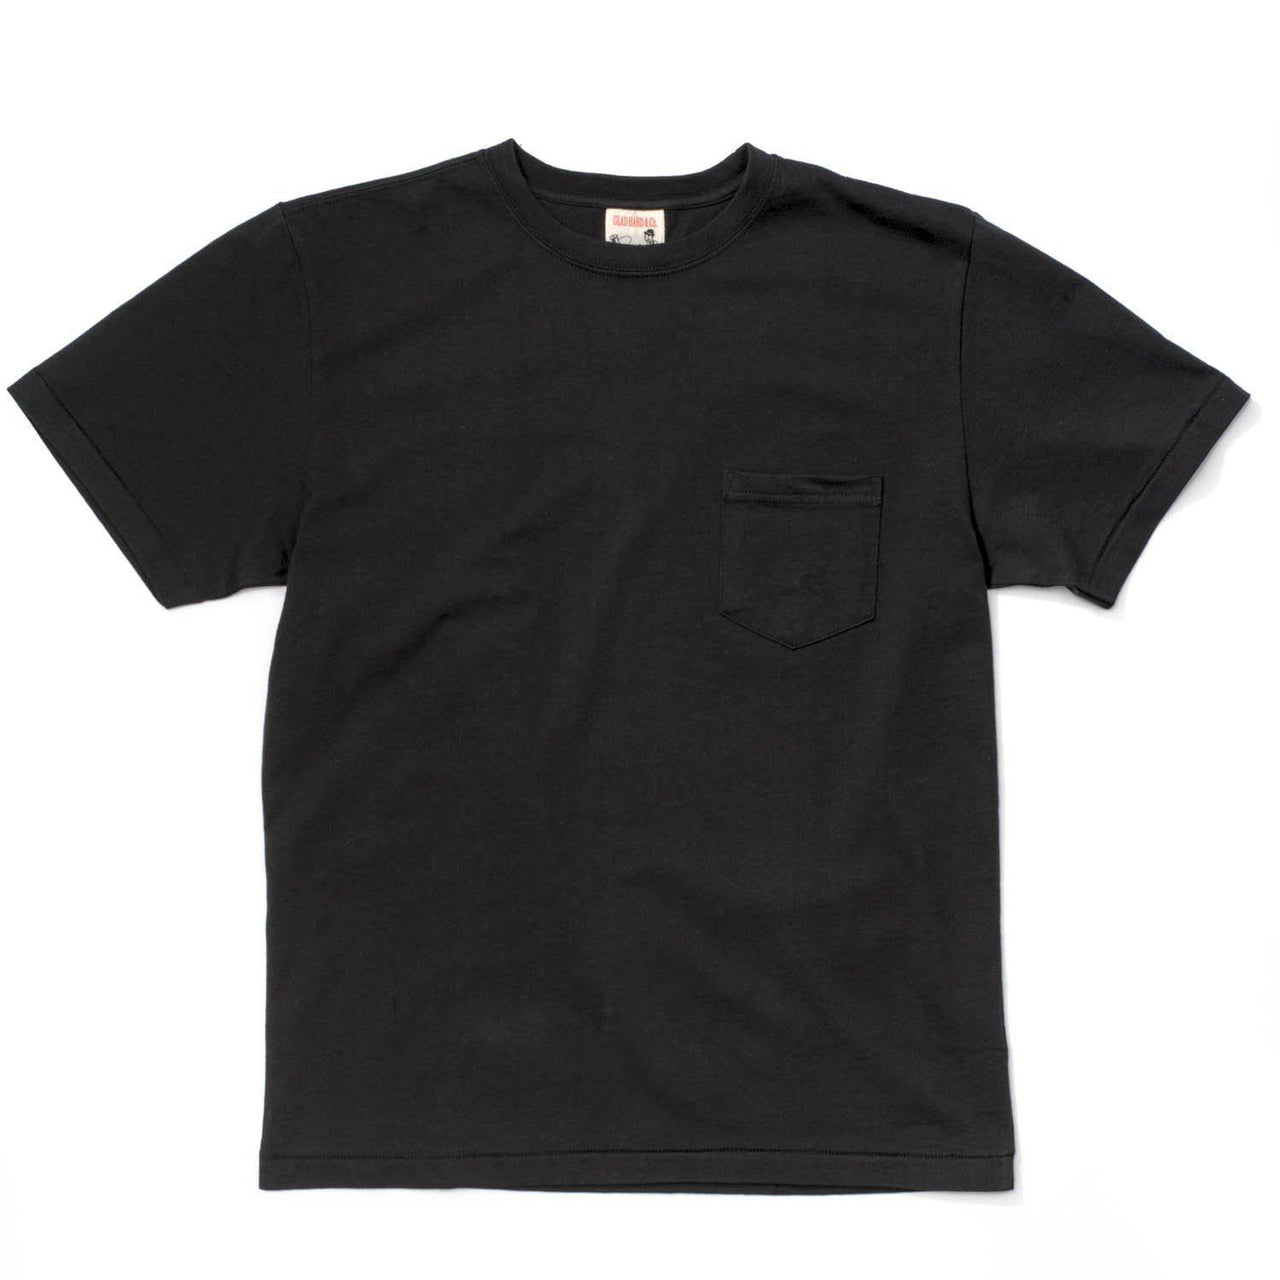 Glad Hand Standard Pocket Tee Black-T-shirt-Clutch Cafe